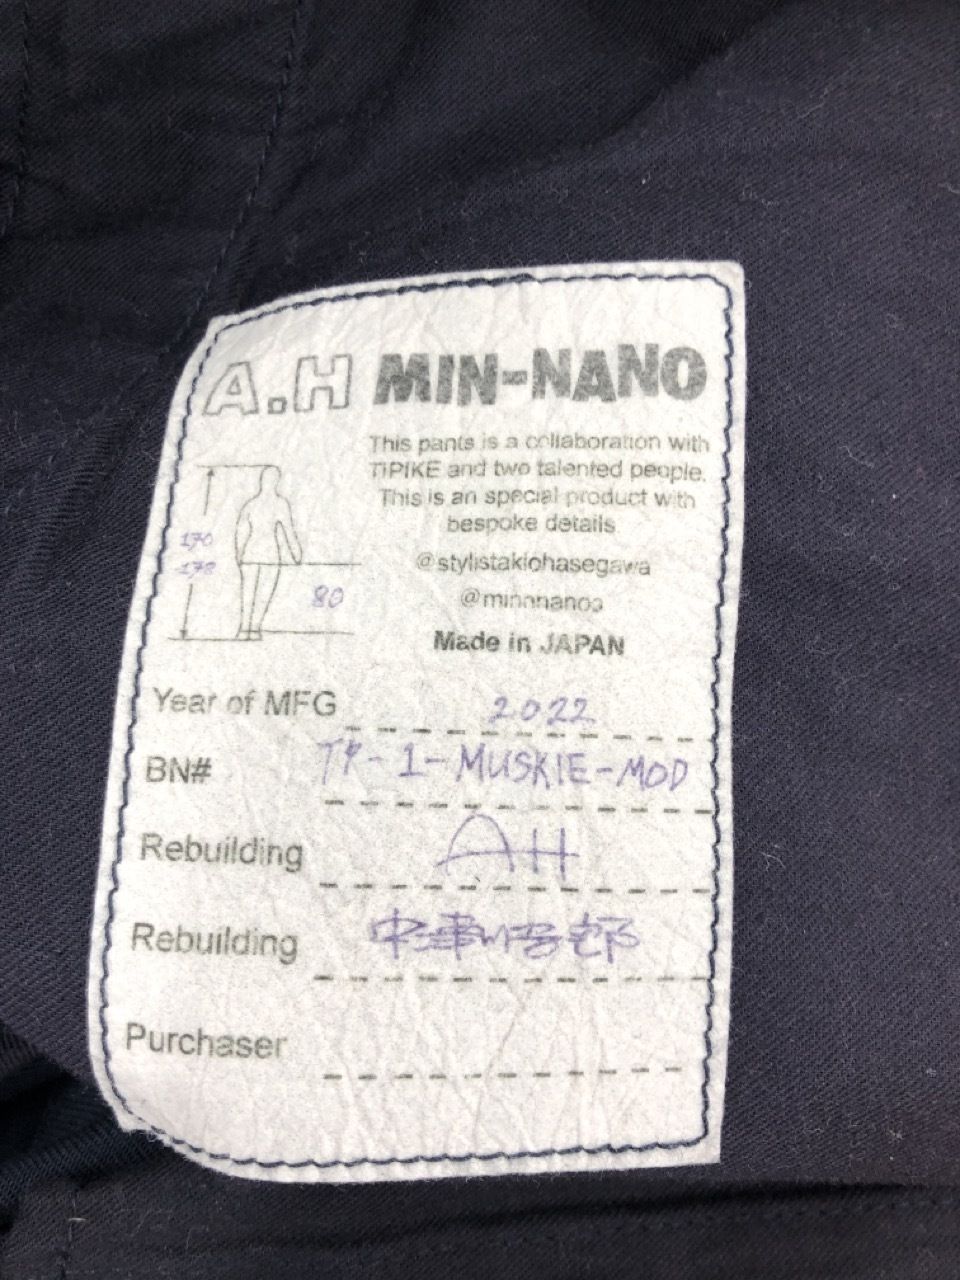 MIN-NANO+TIPIKE+A.H MUSKIE 改 L ネイビー - WHYNOT - メルカリ